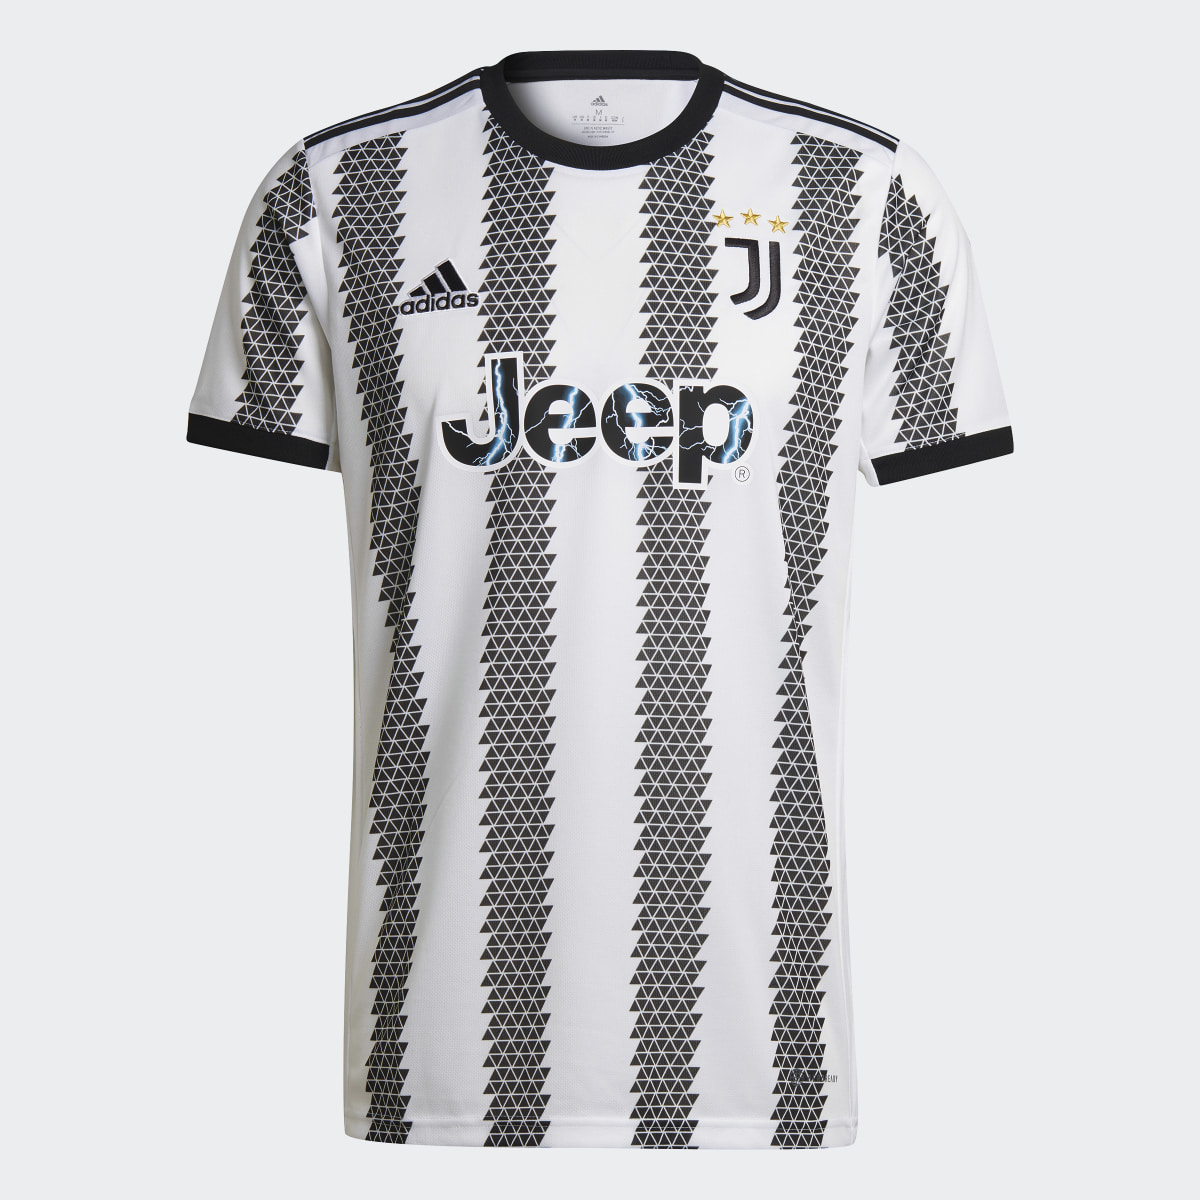 Adidas Juventus 22/23 Home Jersey. 5